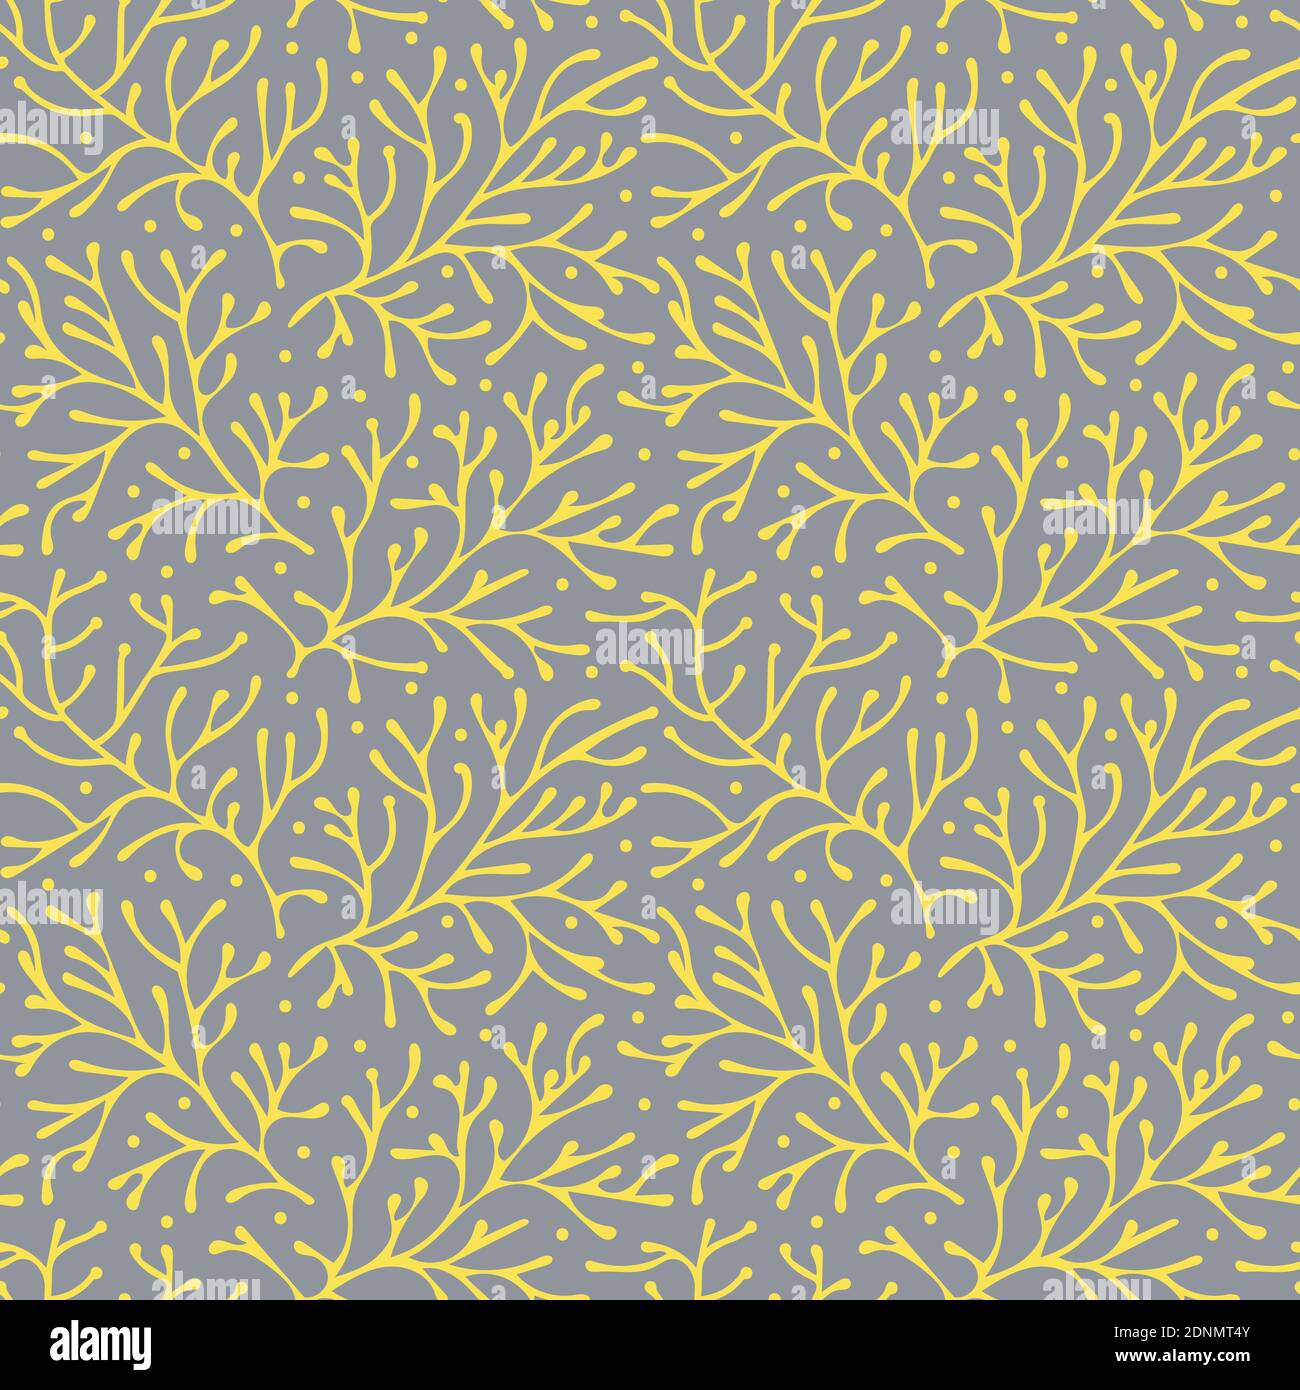 Abstrakt floral nahtlose Muster Vektor-Hintergrund, leuchtend gelb auf ultimative grau, pantone Farben des Jahres Stock Vektor